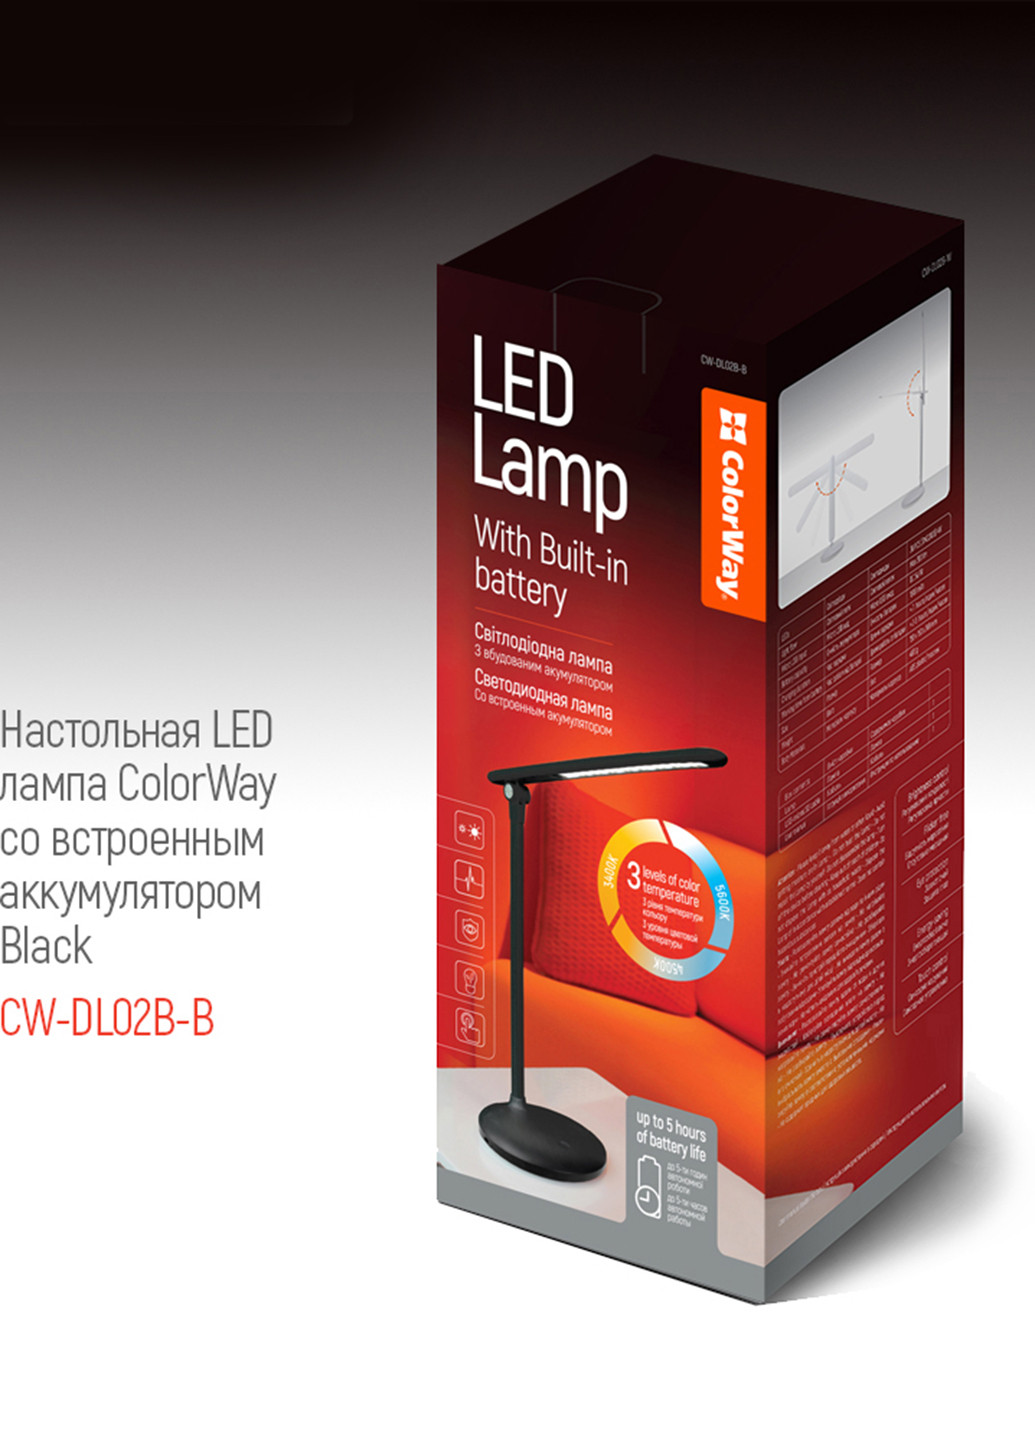 Настільна LED лампа з вбудованим акумулятором Black (CW-DL02B-B) Colorway настольная led со встроенным аккумулятором black (cw-dl02b-b) (145694551)